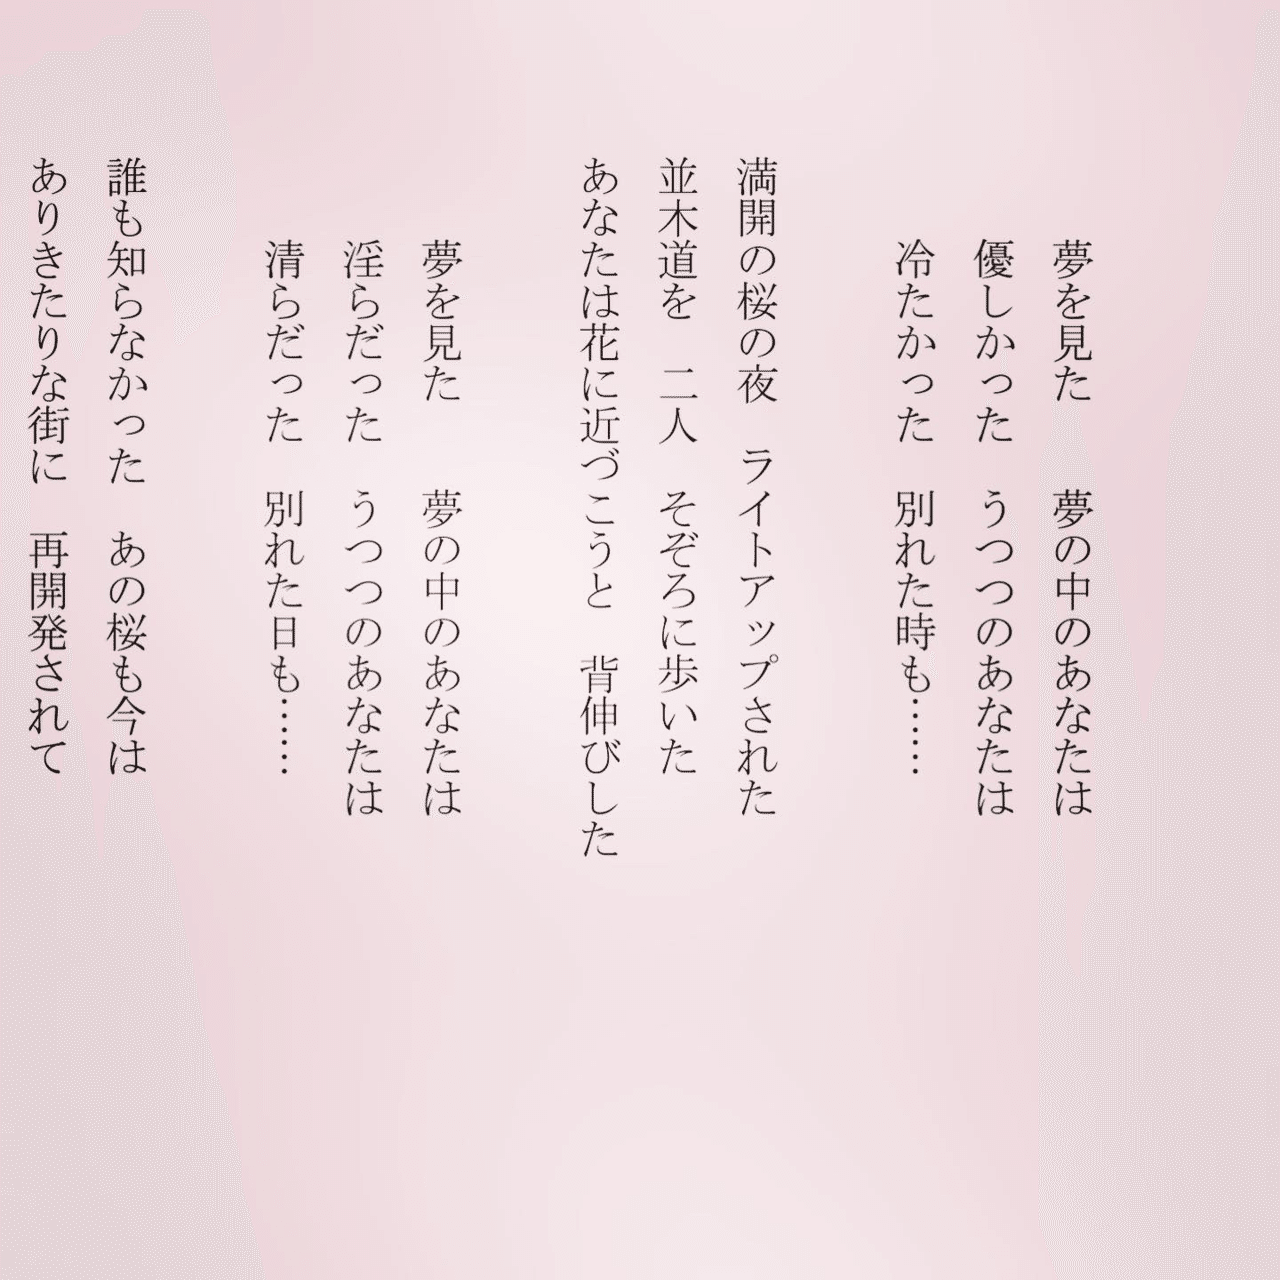 1分で読める朝の詩 夢をみた 夢の中のあなたは 日本人は桜を見ると ものを想うのでしょうね 詩 詩人 ポエム 現代詩 自由詩 恋愛詩 恋愛 恋 東 龍青 アズマ リュウセイ Note